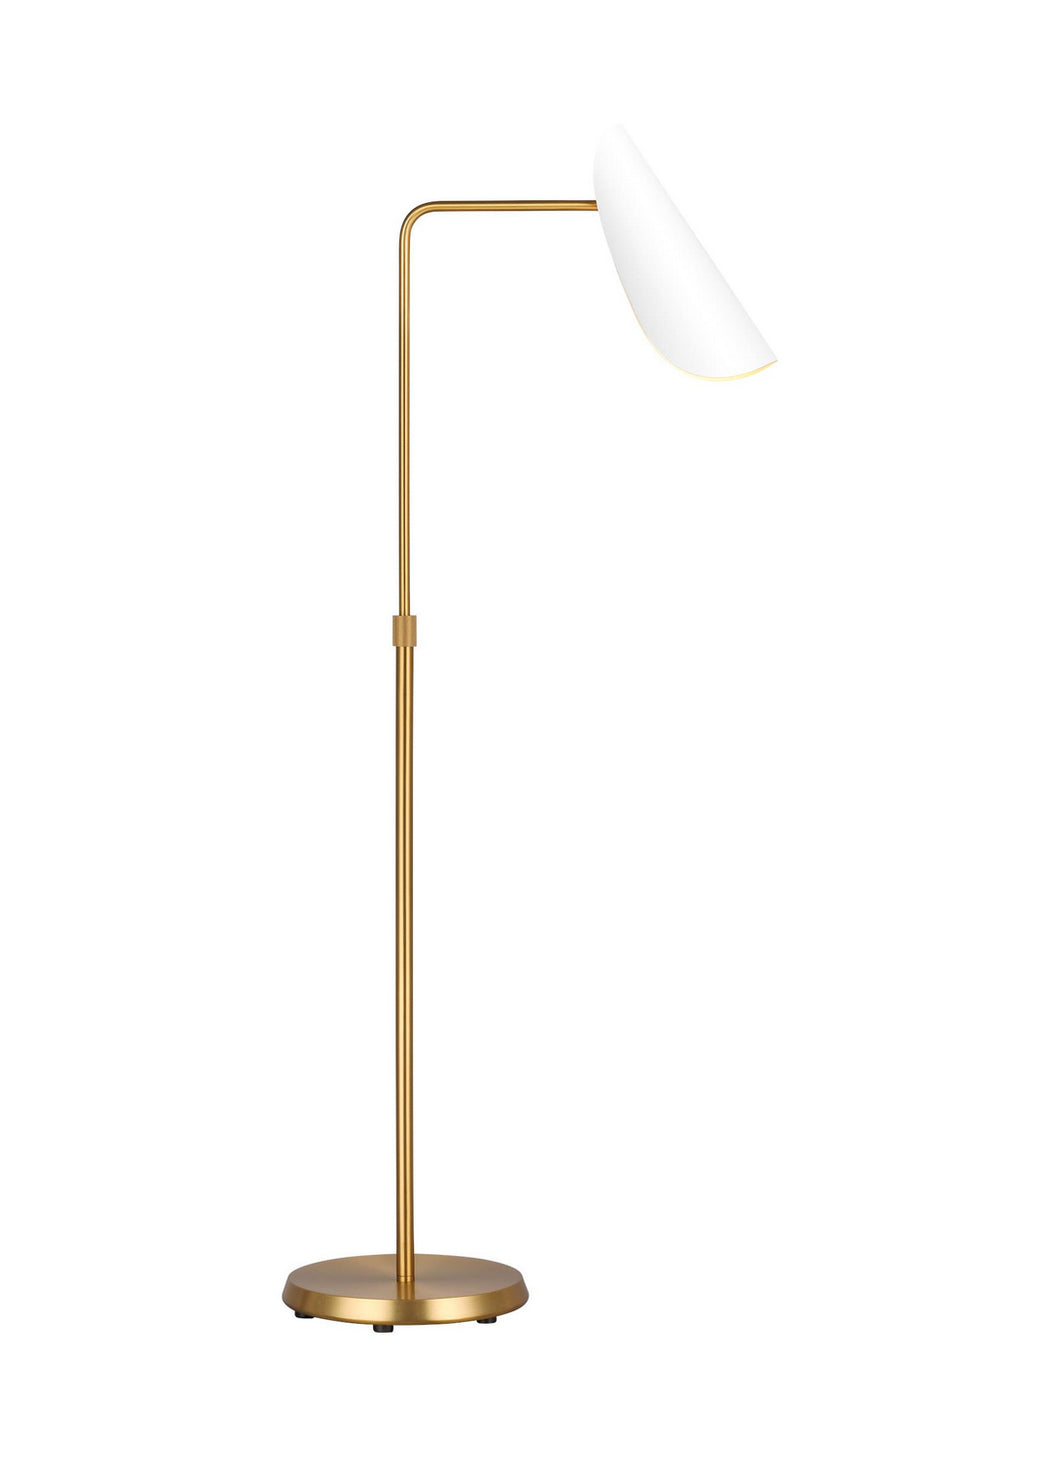 Generation Lighting - AET1001BBSMWT1 - One Light Floor Lamp - Tresa